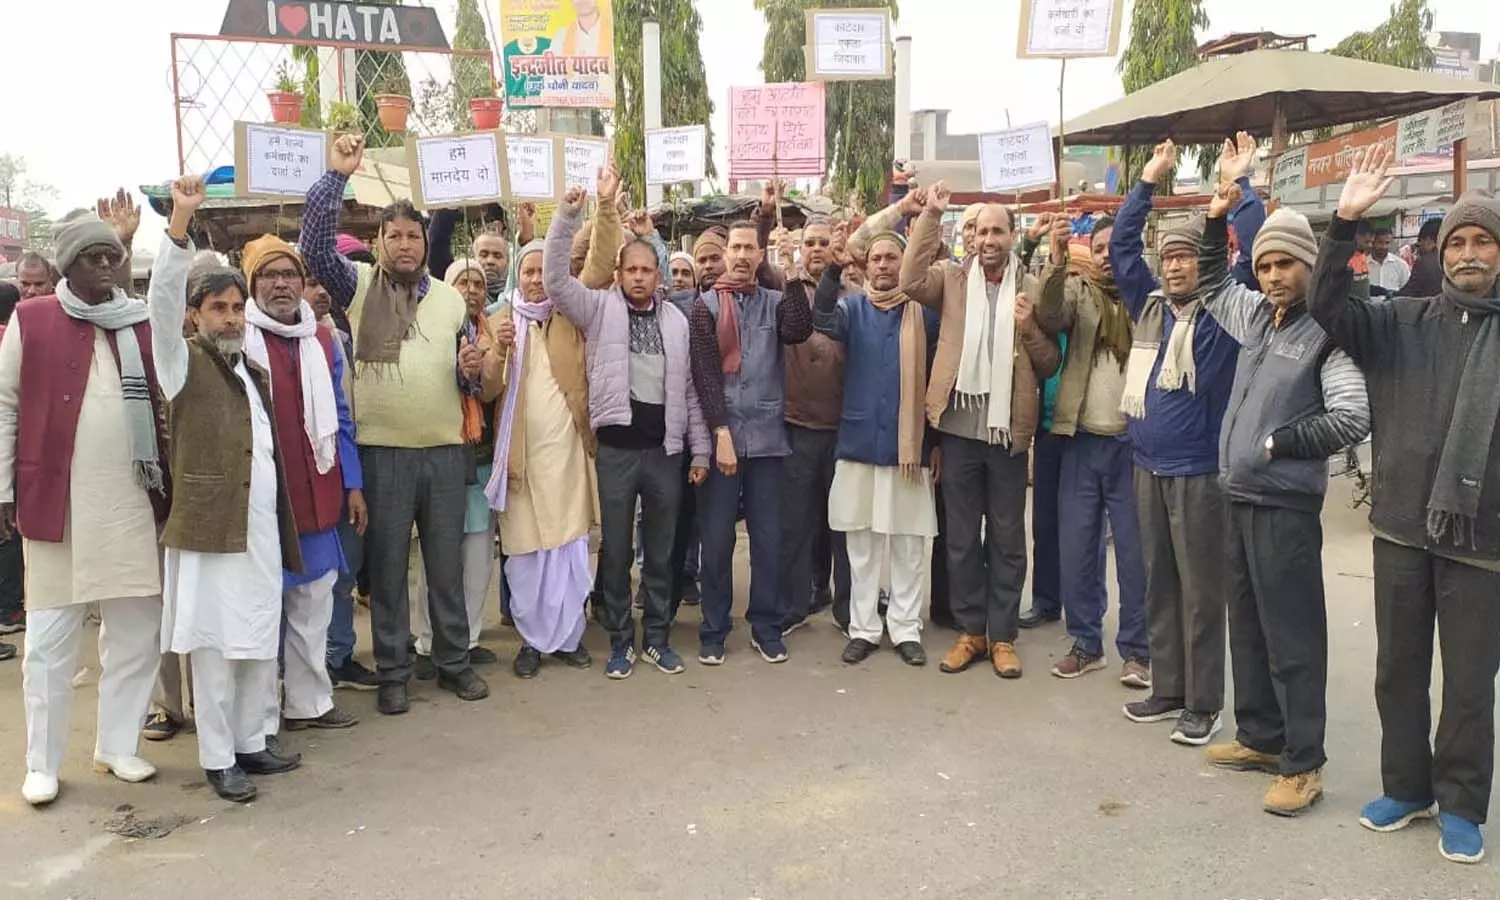 In Kushinagar, Kotdars demonstrated against AAP MP Sanjay Singh